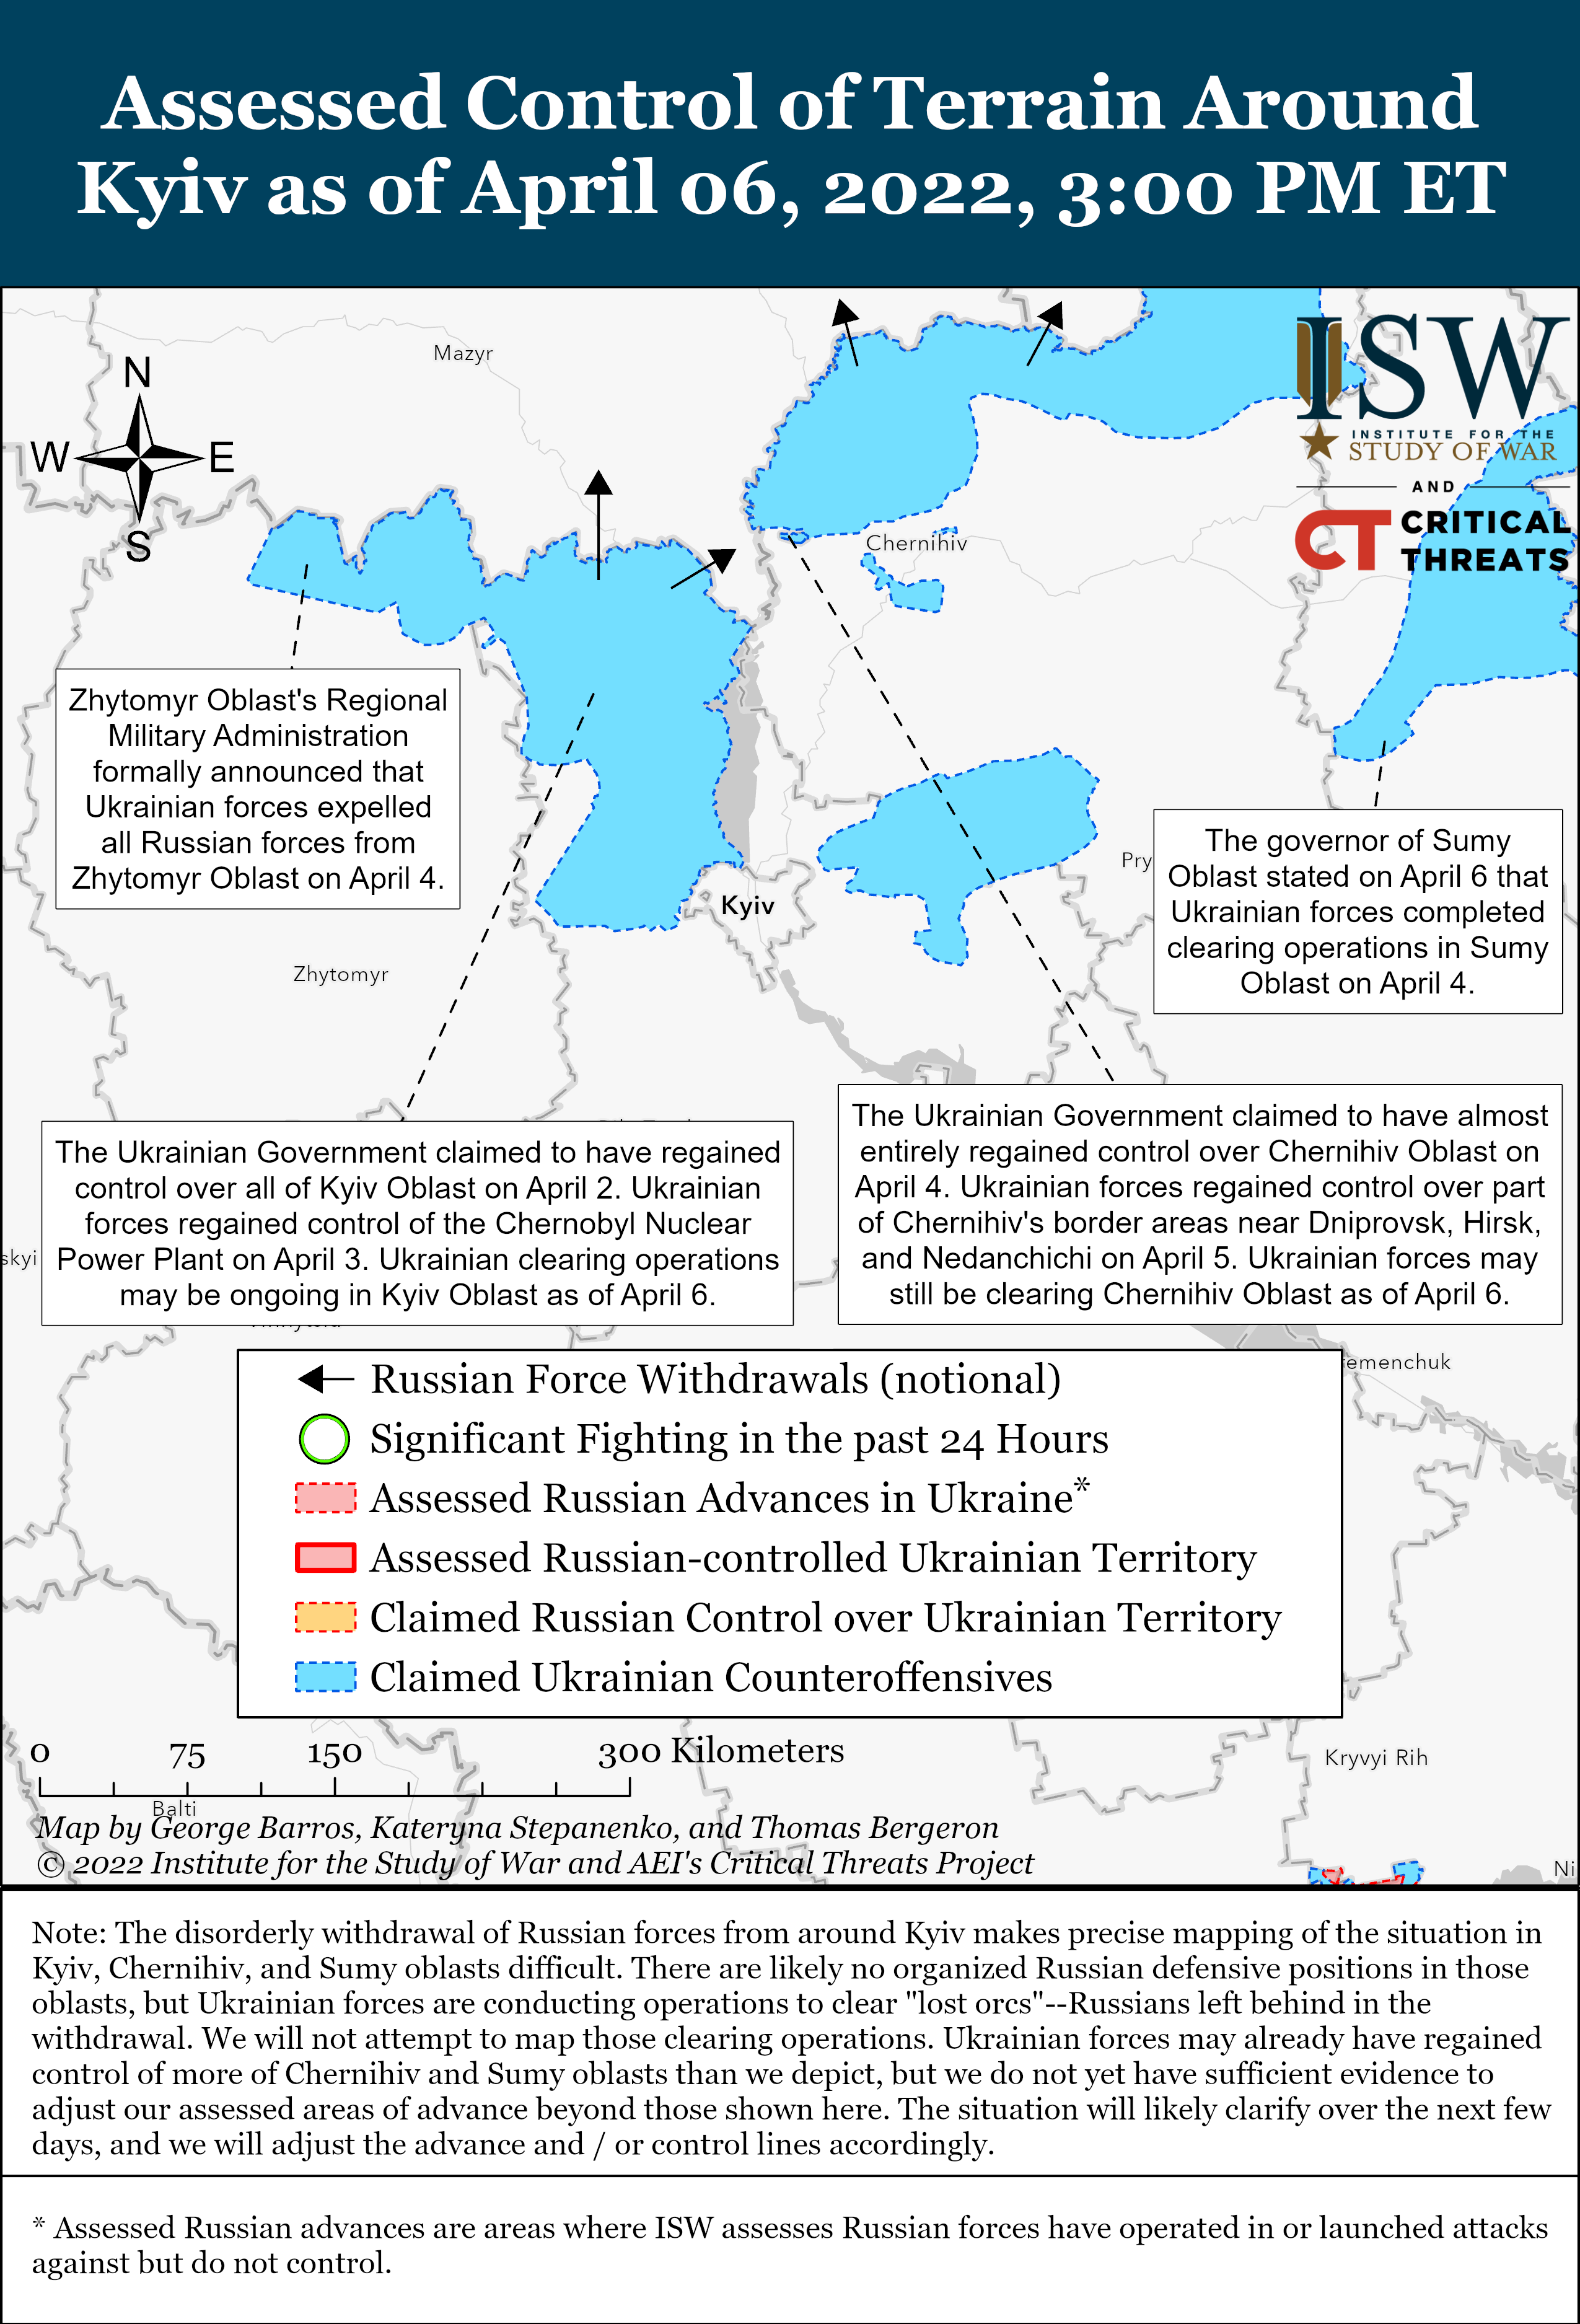 Kyiv Battle Map Draft April 6,2022.png